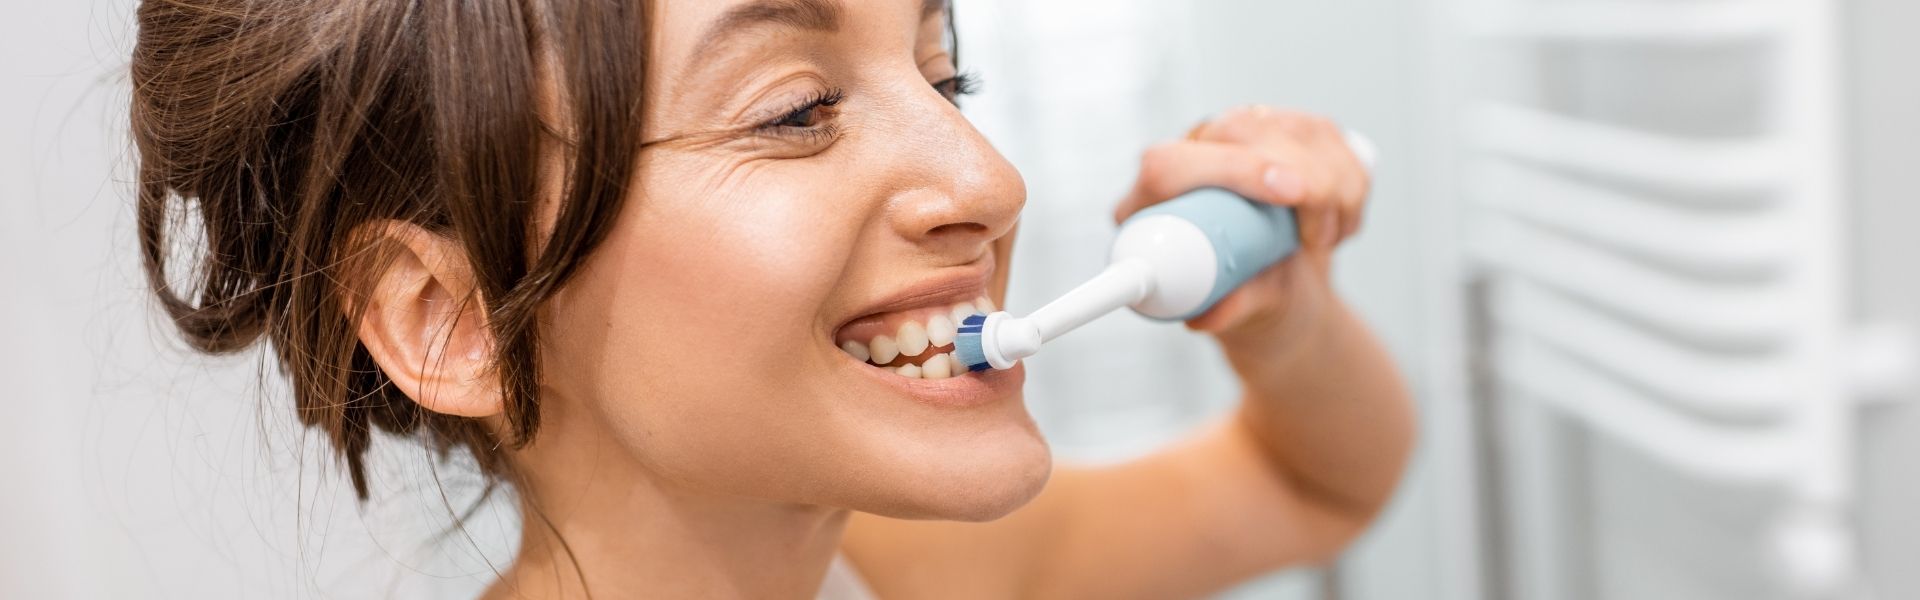 Vì sao cần vệ sinh răng với bàn chải điện thông minh?